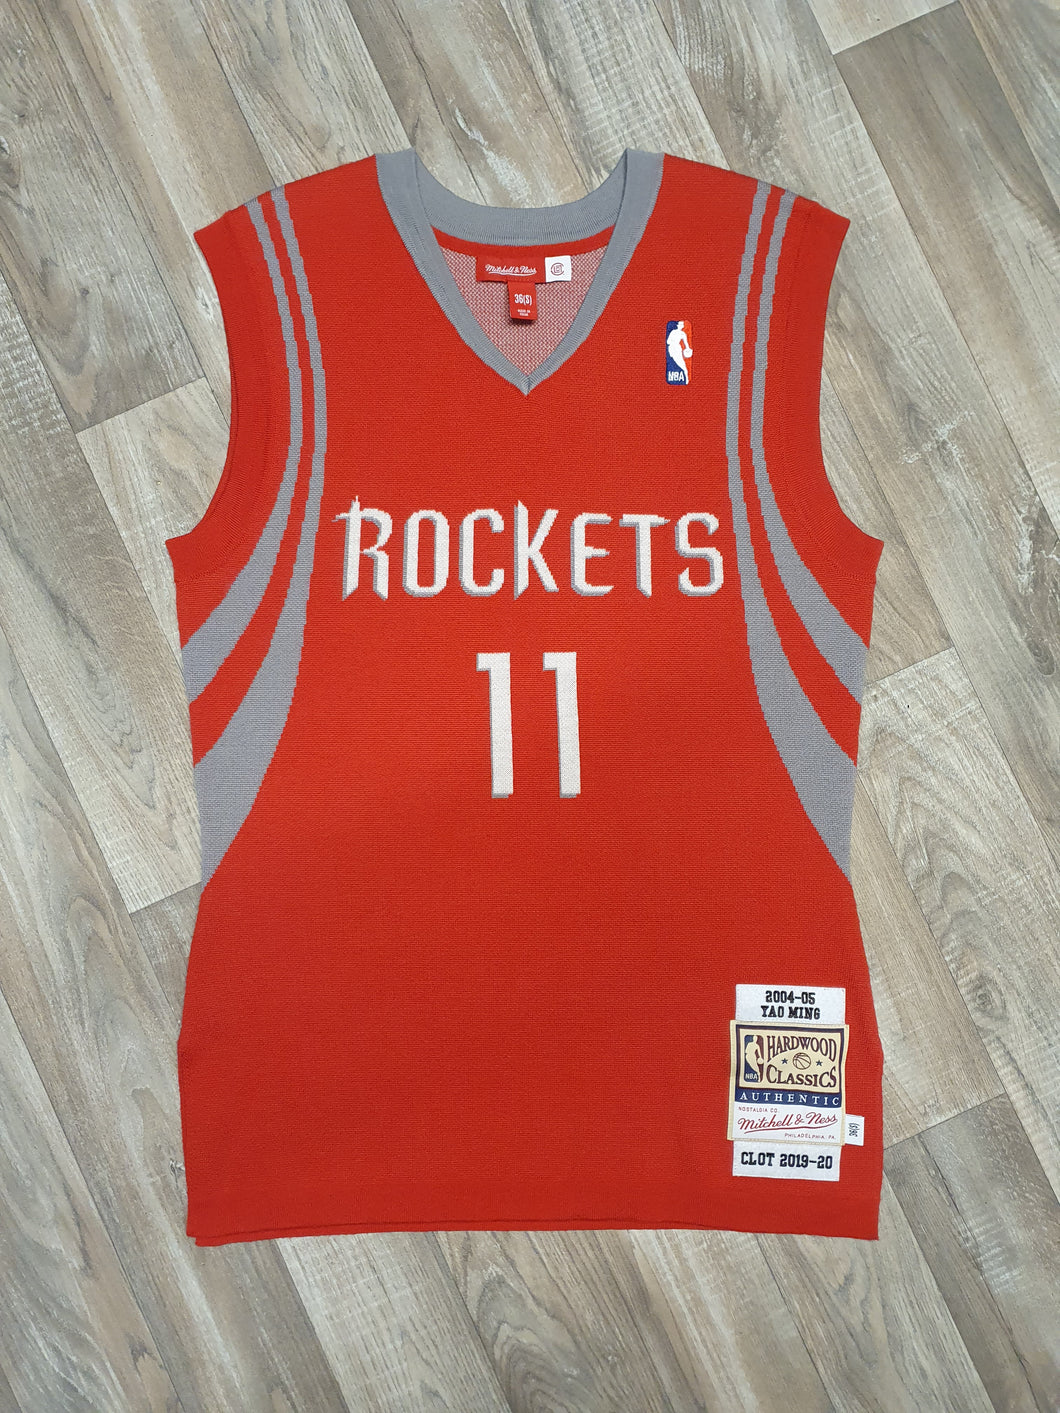 Houston Rockets YAO MING basketball jersey youth XL REEBOK